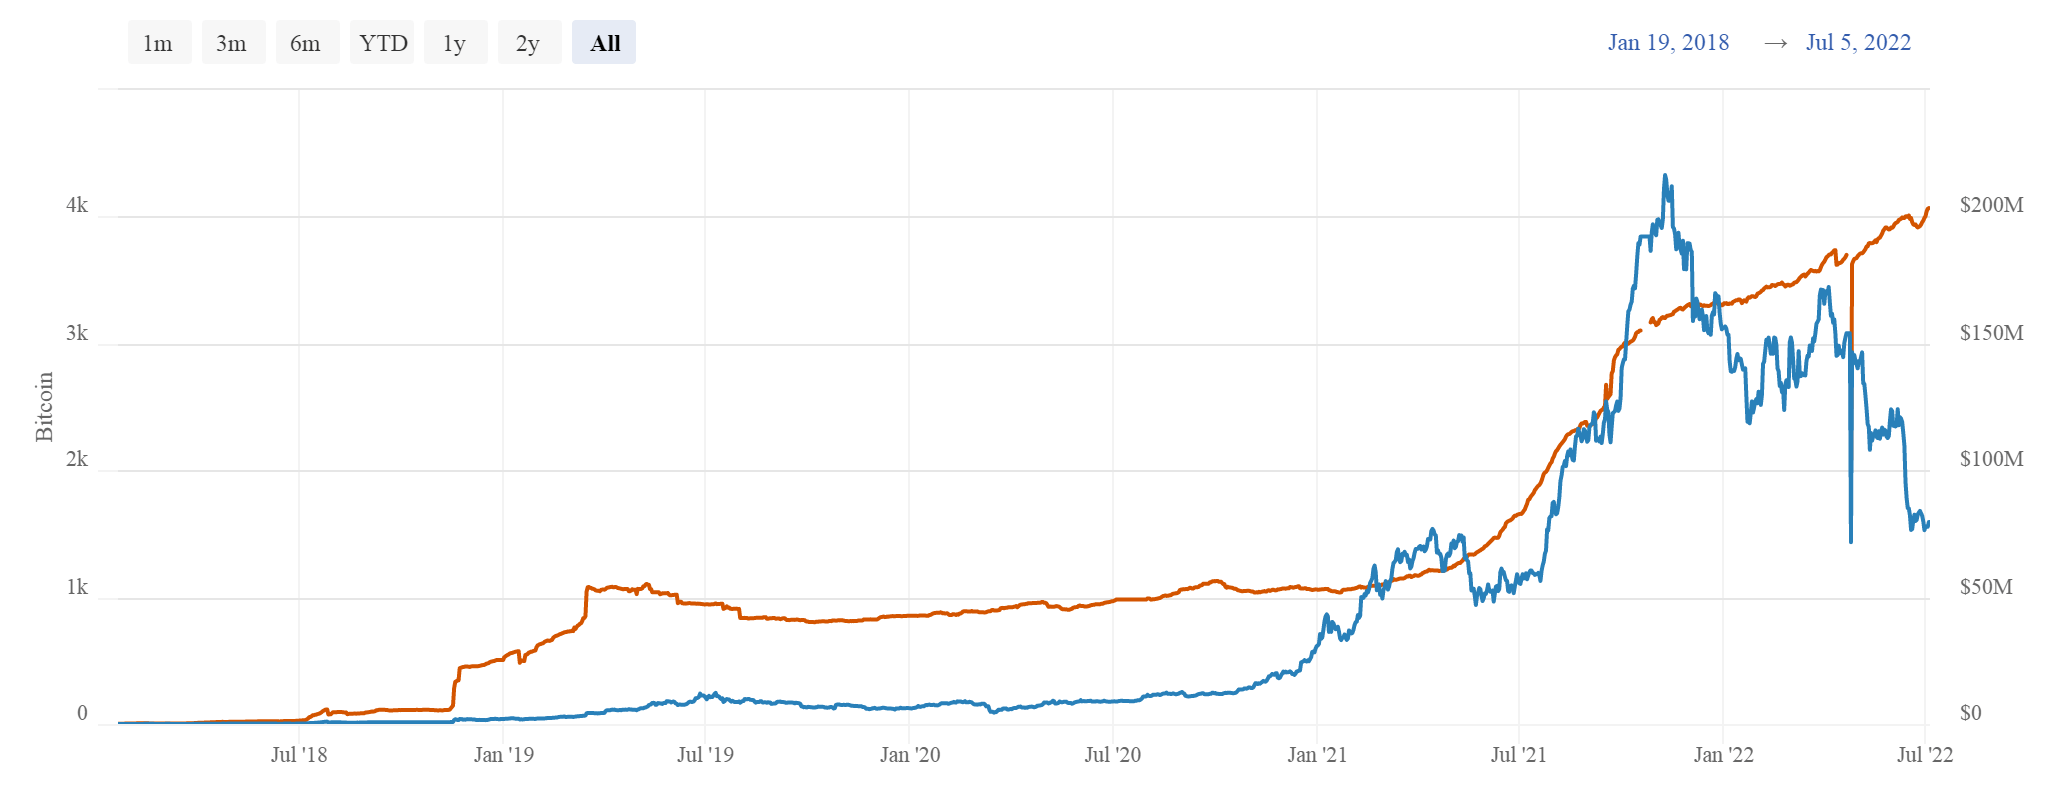 BitcoinVisuals.com chart